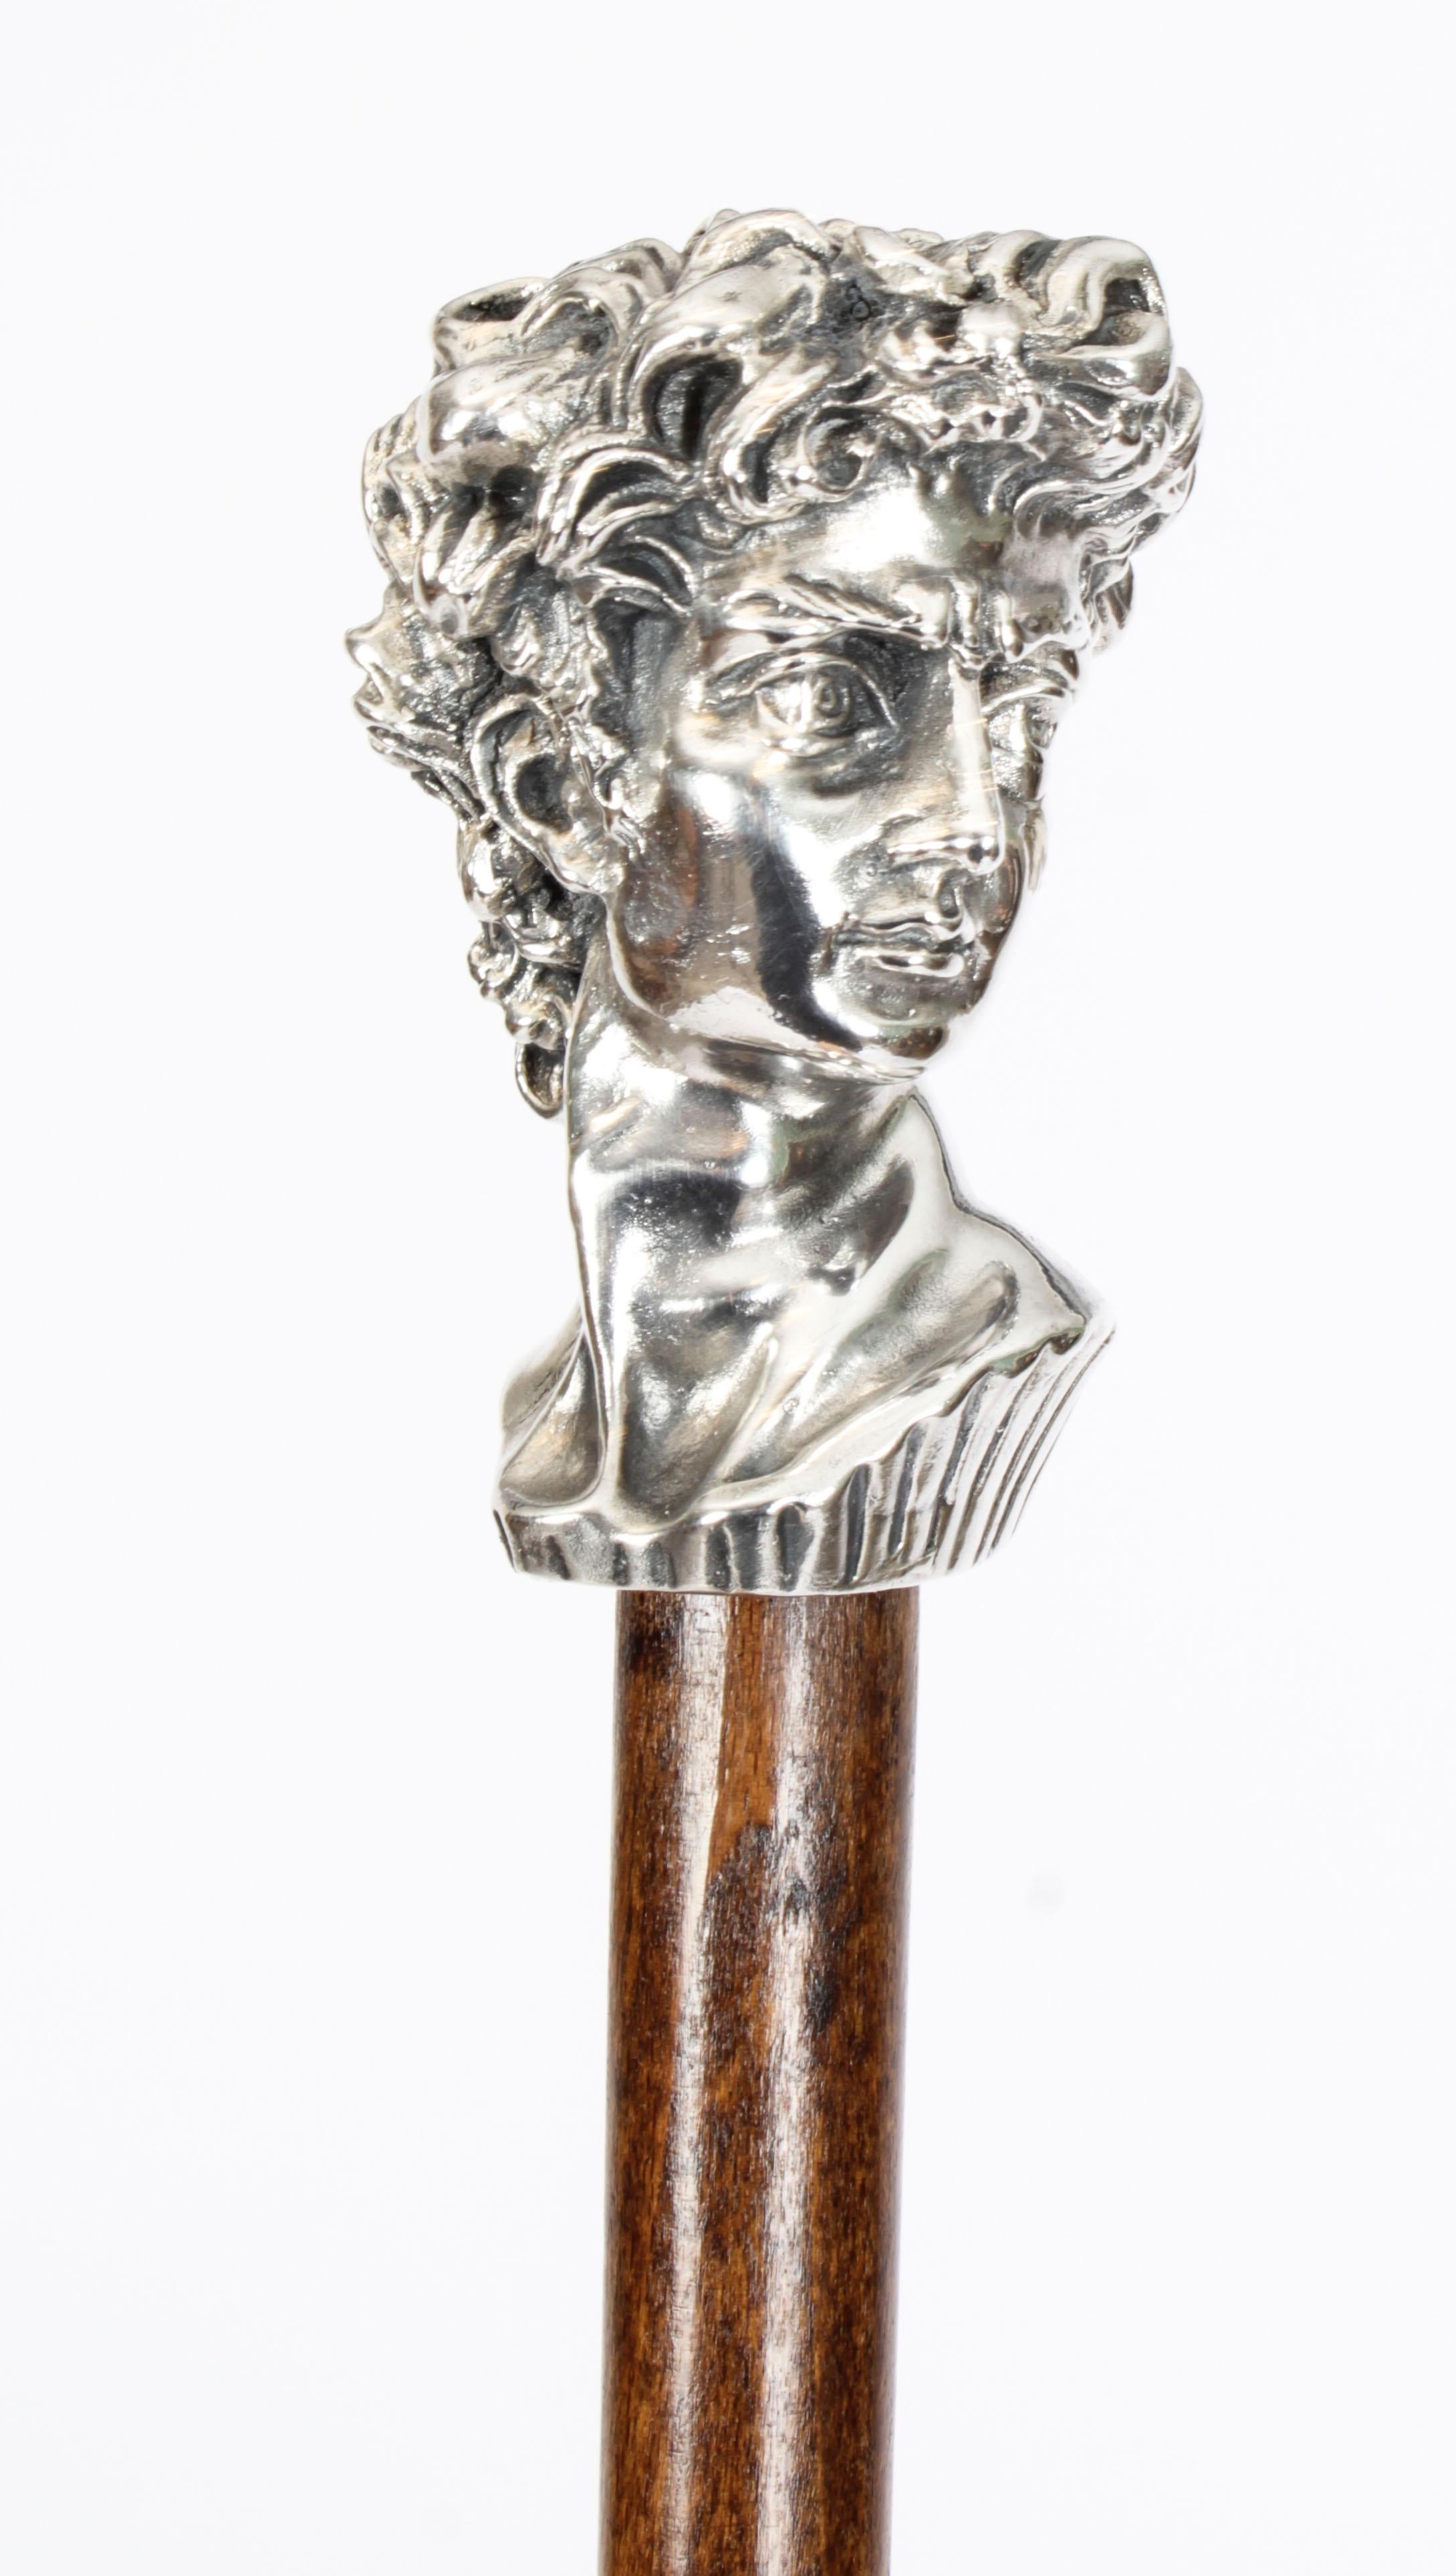 Dies ist eine schöne antike italienische Gentleman's Cast 800 Silber Spazierstock, CIRCA im Jahr 1880
 
Dieser auffällige Stock verfügt über einen verzierten, in Silber gegossenen Knauf, der realistisch einen römischen Kopf darstellt, bei dem es